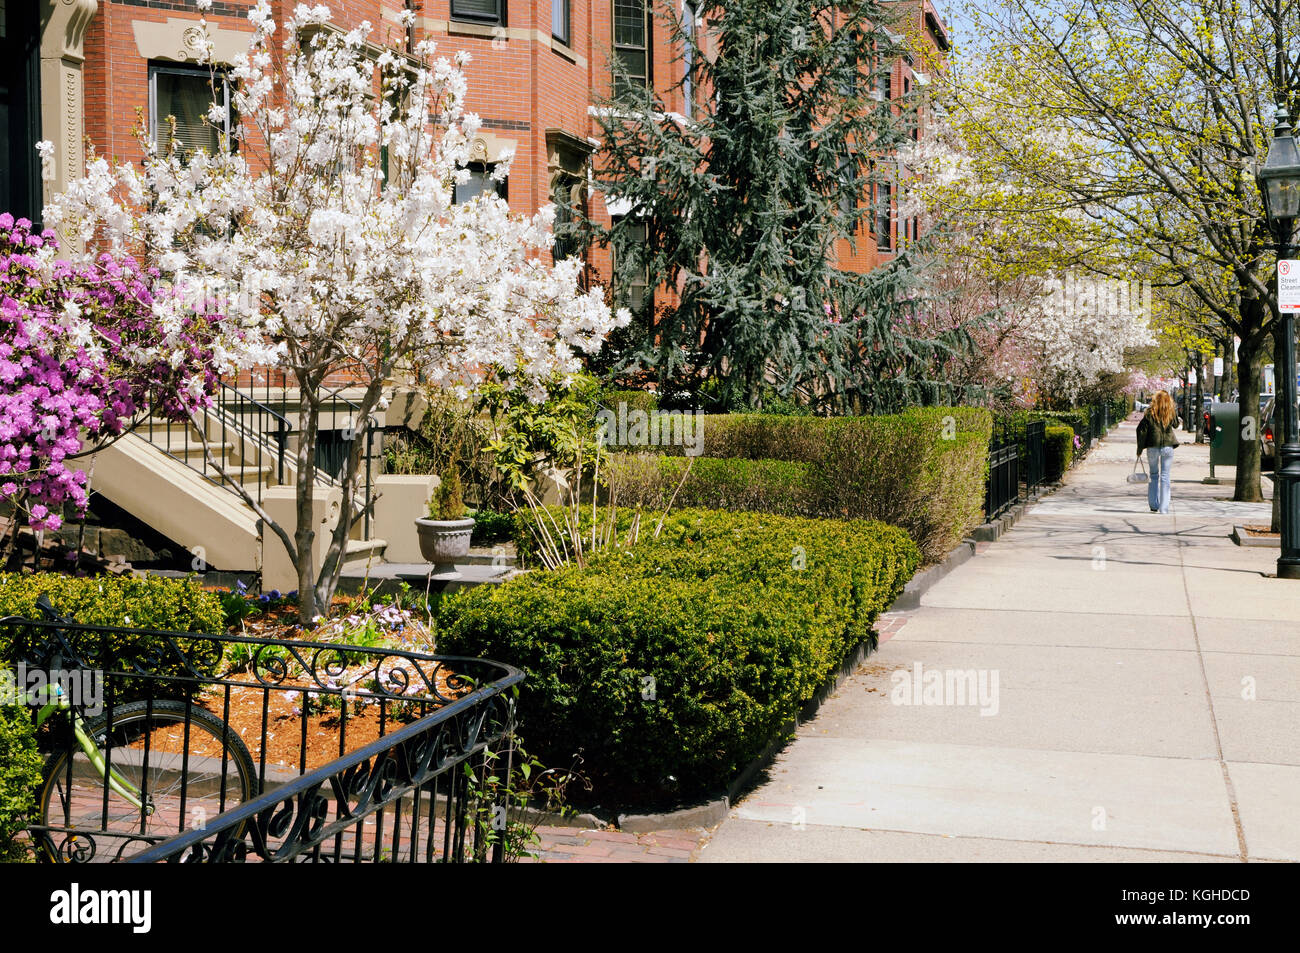 Le printemps à Back Bay, Boston. élégants jardins, de larges trottoirs, de grès et de brique, immeubles d'architecture victorienne. Banque D'Images